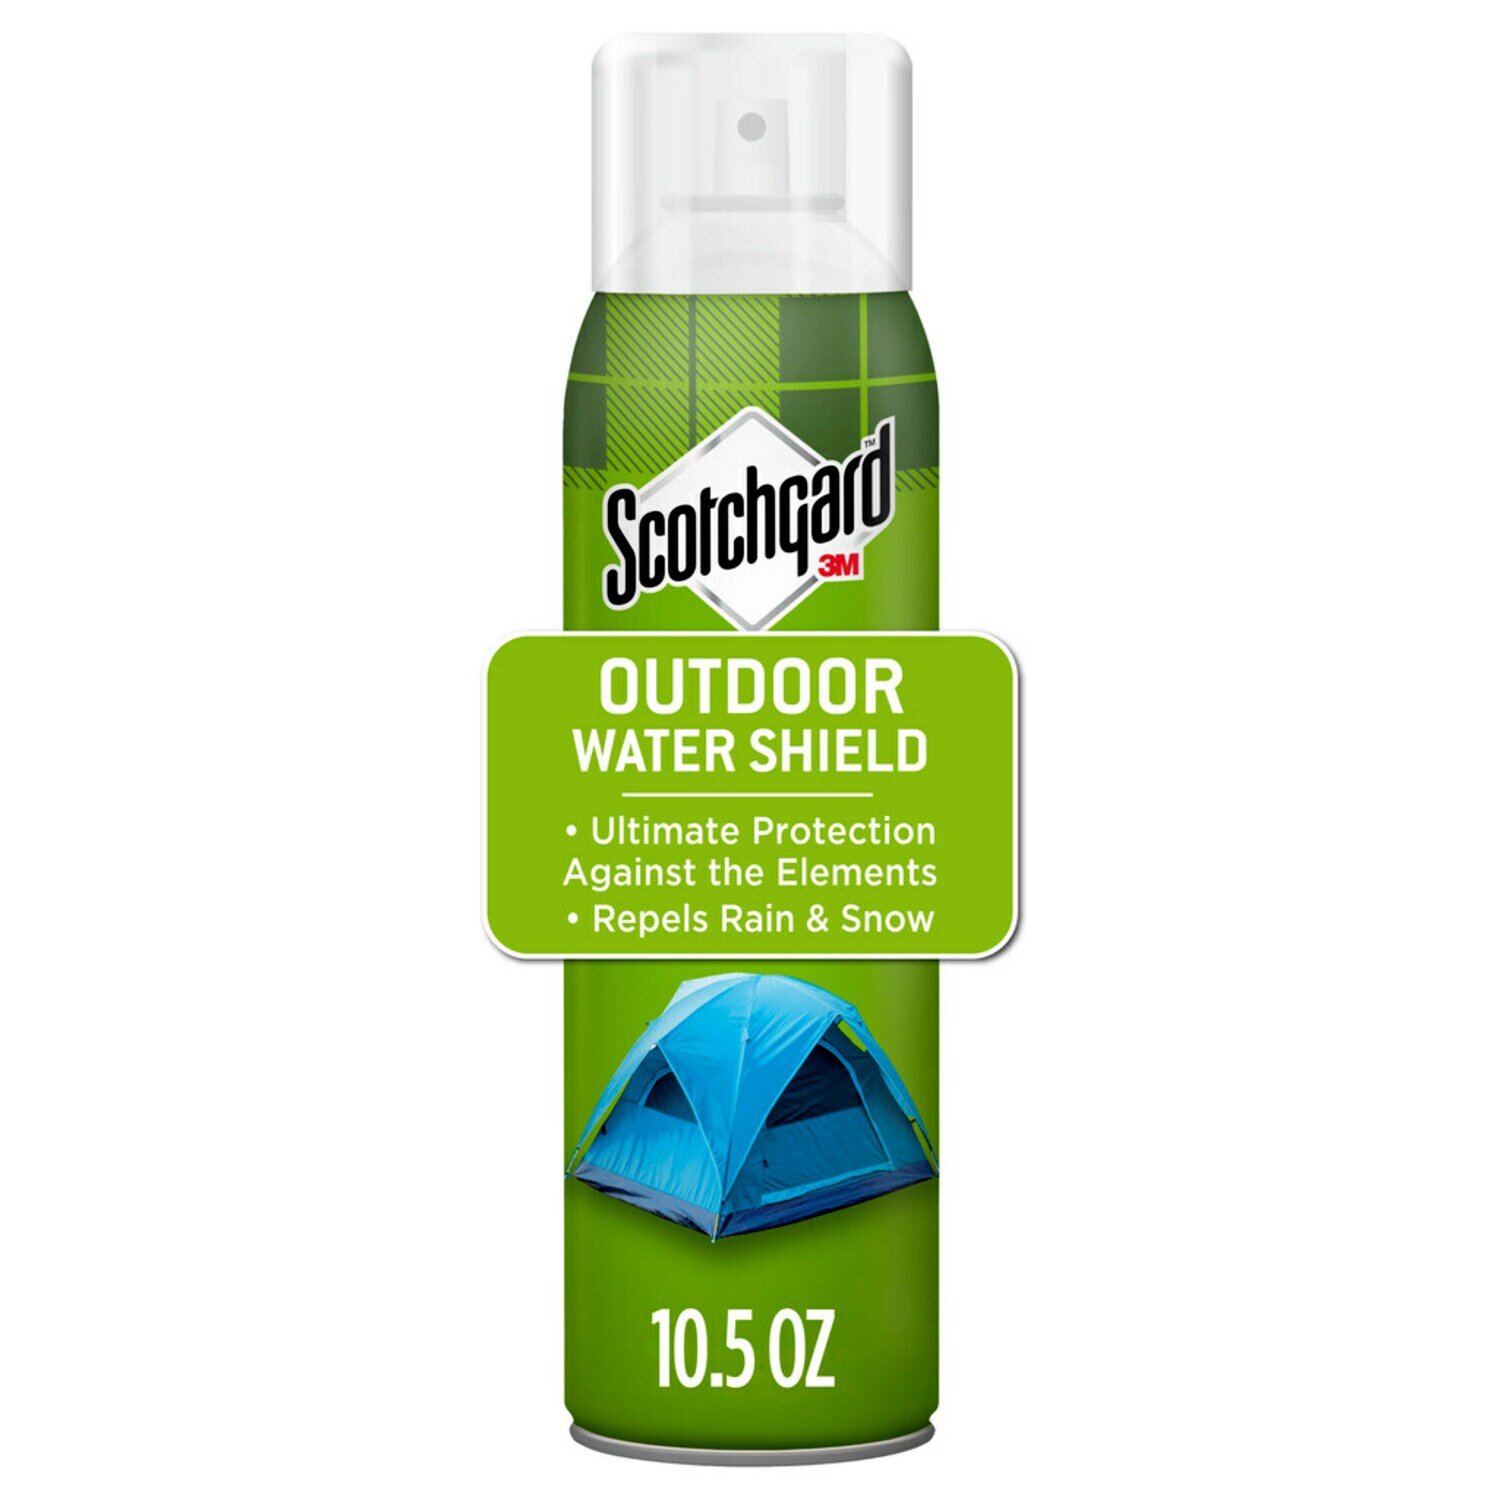 7100246743 - Scotchgard Outdoor Water Shield 5020-10C-4,10.5 oz (297 g)